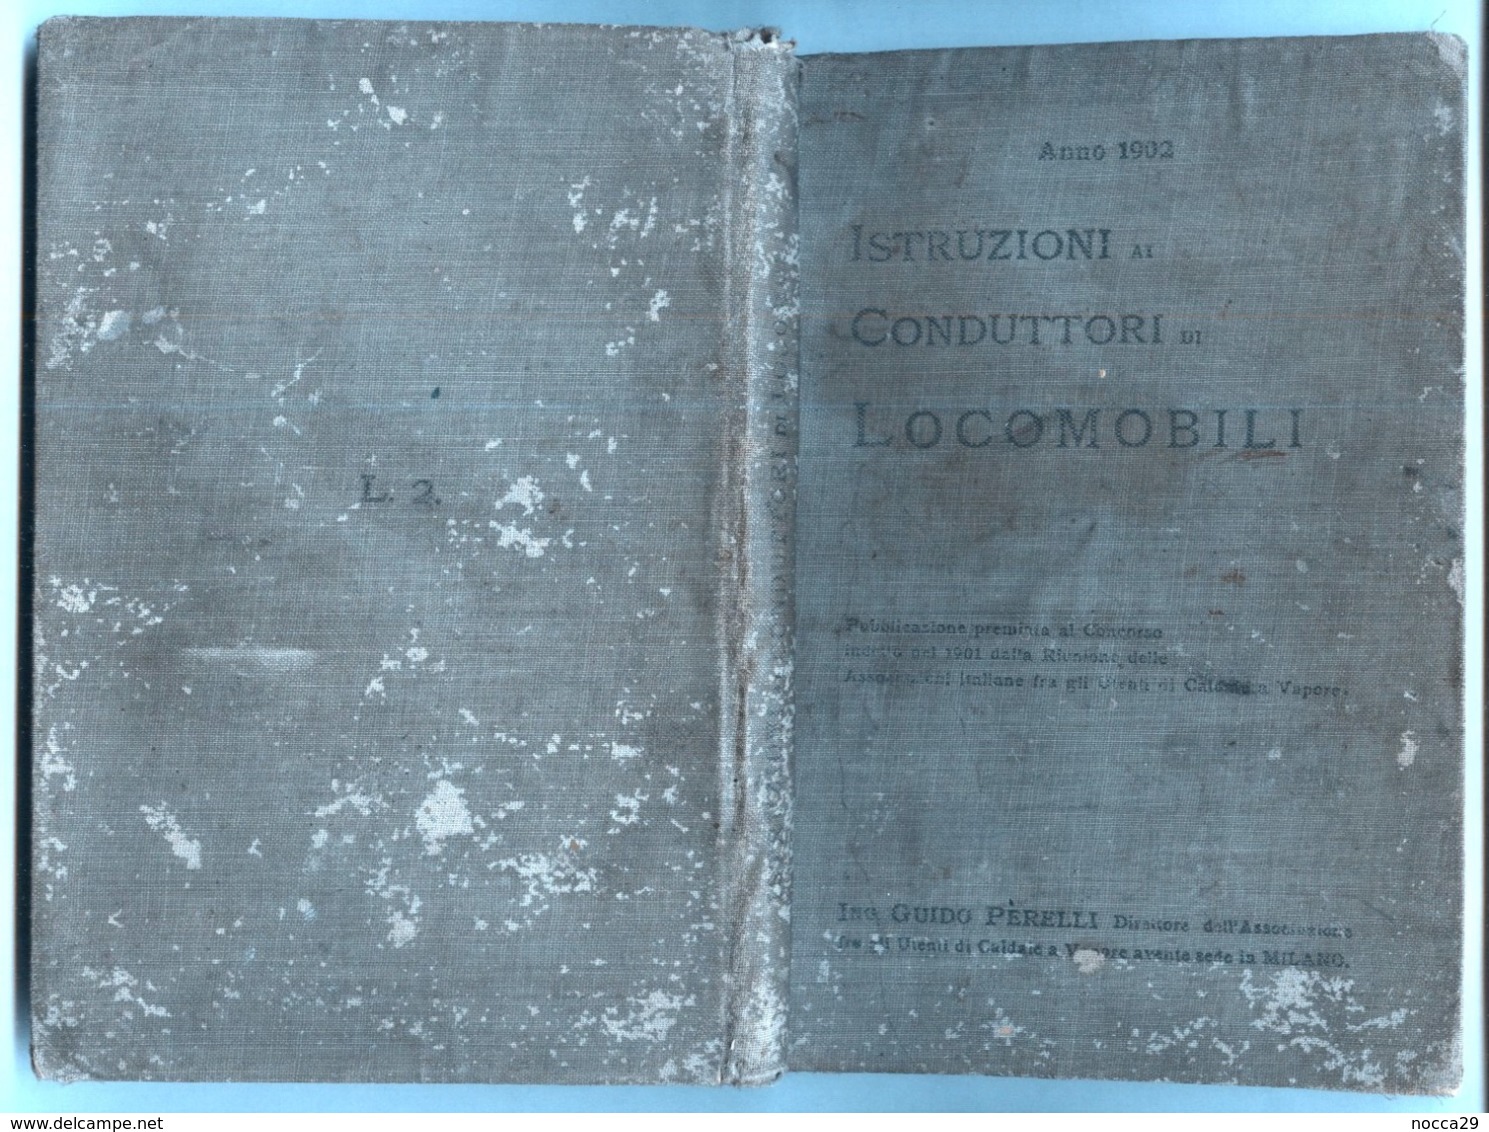 INGEGNERIA MECCANICA - 1902 ISTRUZIONI AI CONDUTTORI DI LOCOMOBILI ( LOCOMOTIVE) - Matematica E Fisica